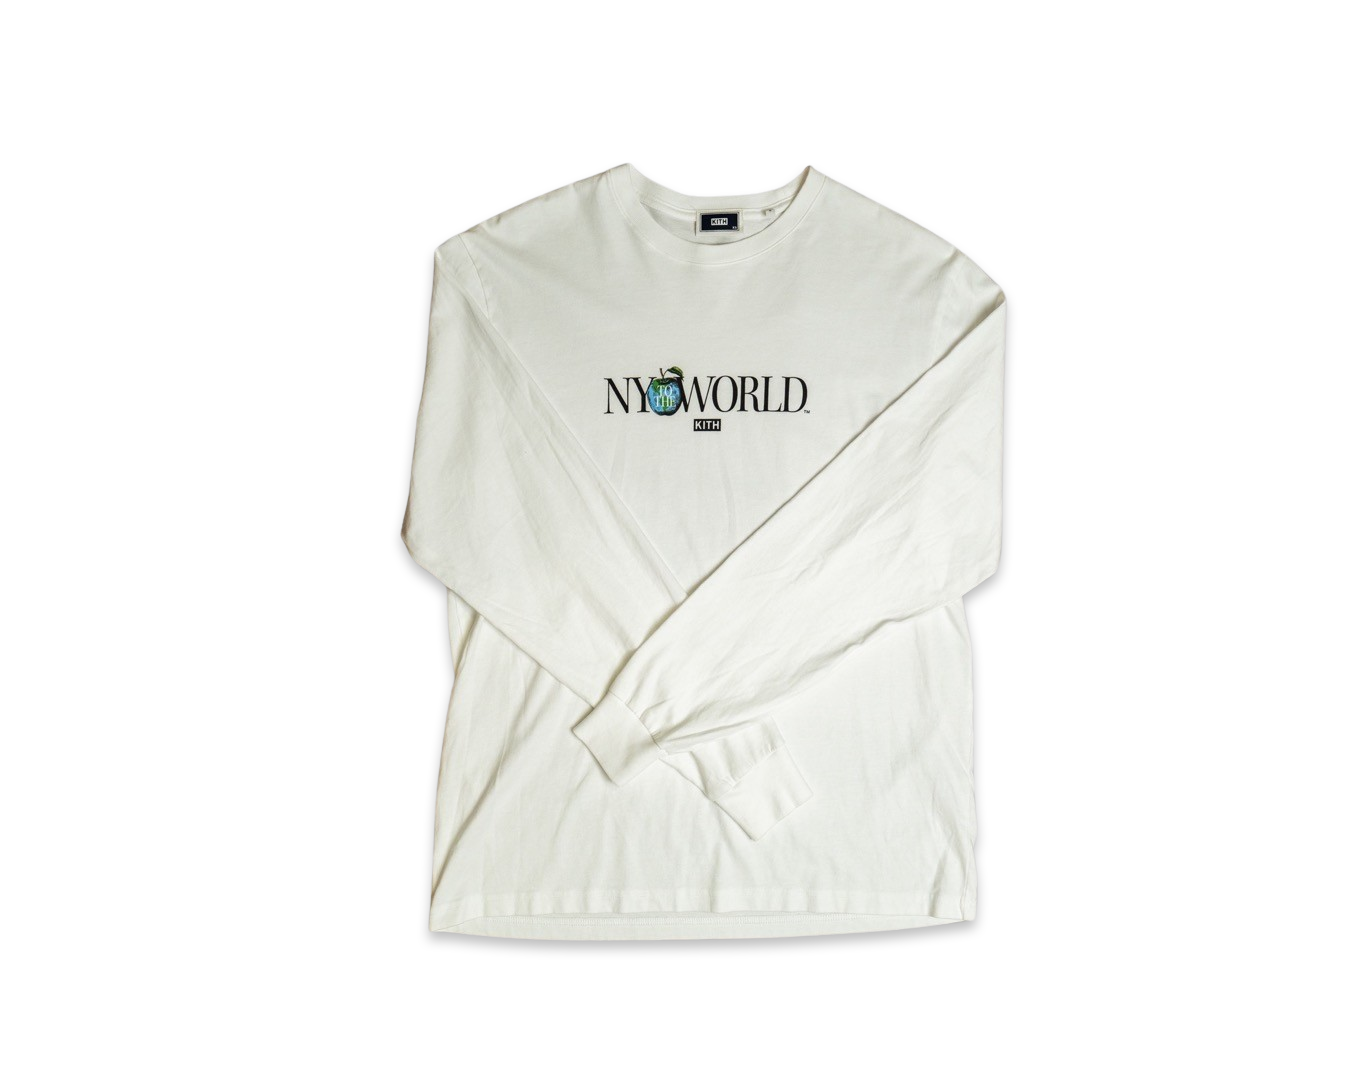 Kith NY to the World Long Sleeve T-Shirt White